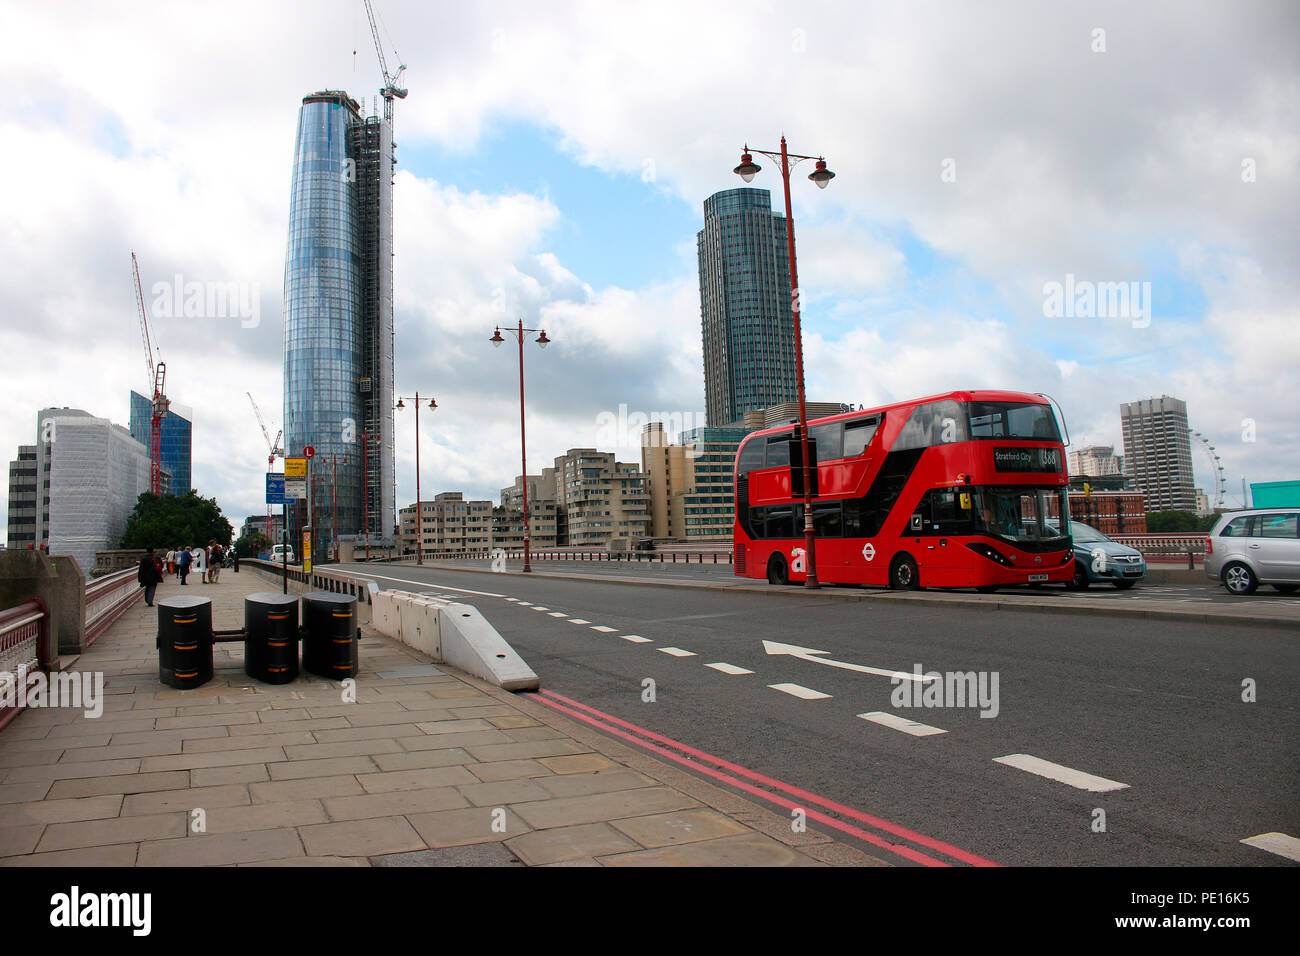 nach den letzten mit Autos veruebten islamistischen Terroranschlaegen errichtete Sperren an den Bruecken Londons, London Bridge, London, England. Stock Photo